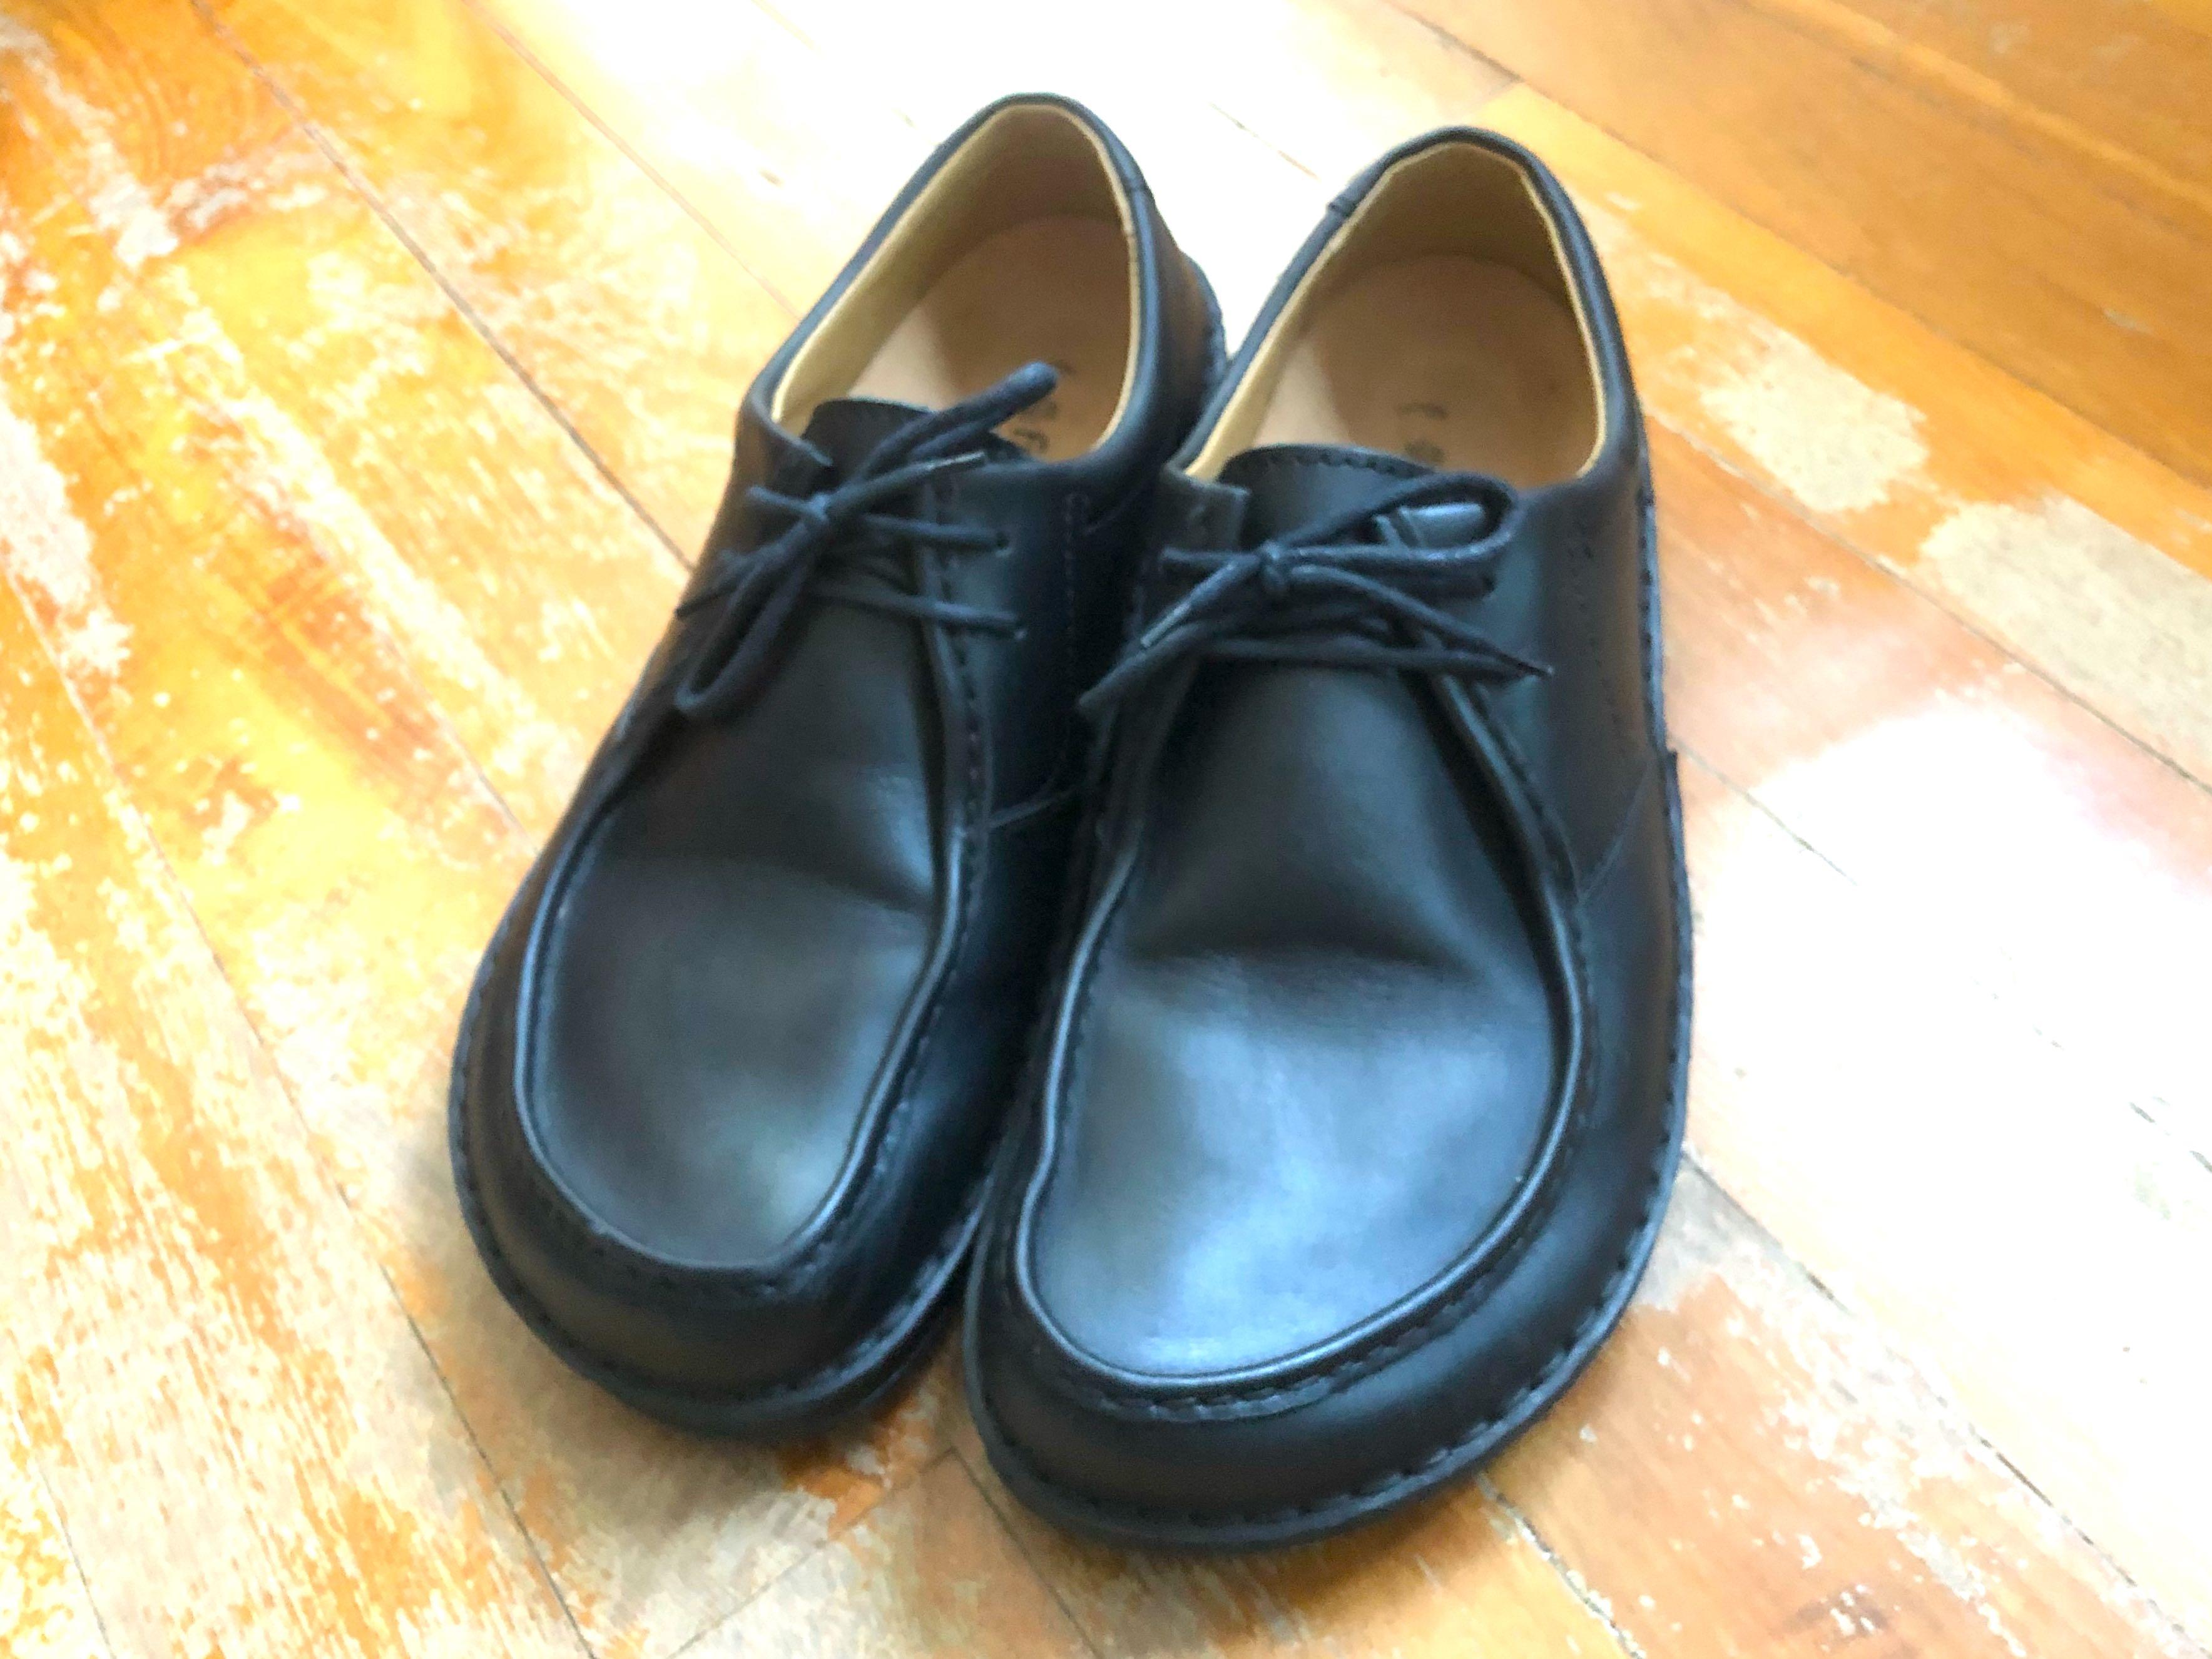 birkenstock formal shoes